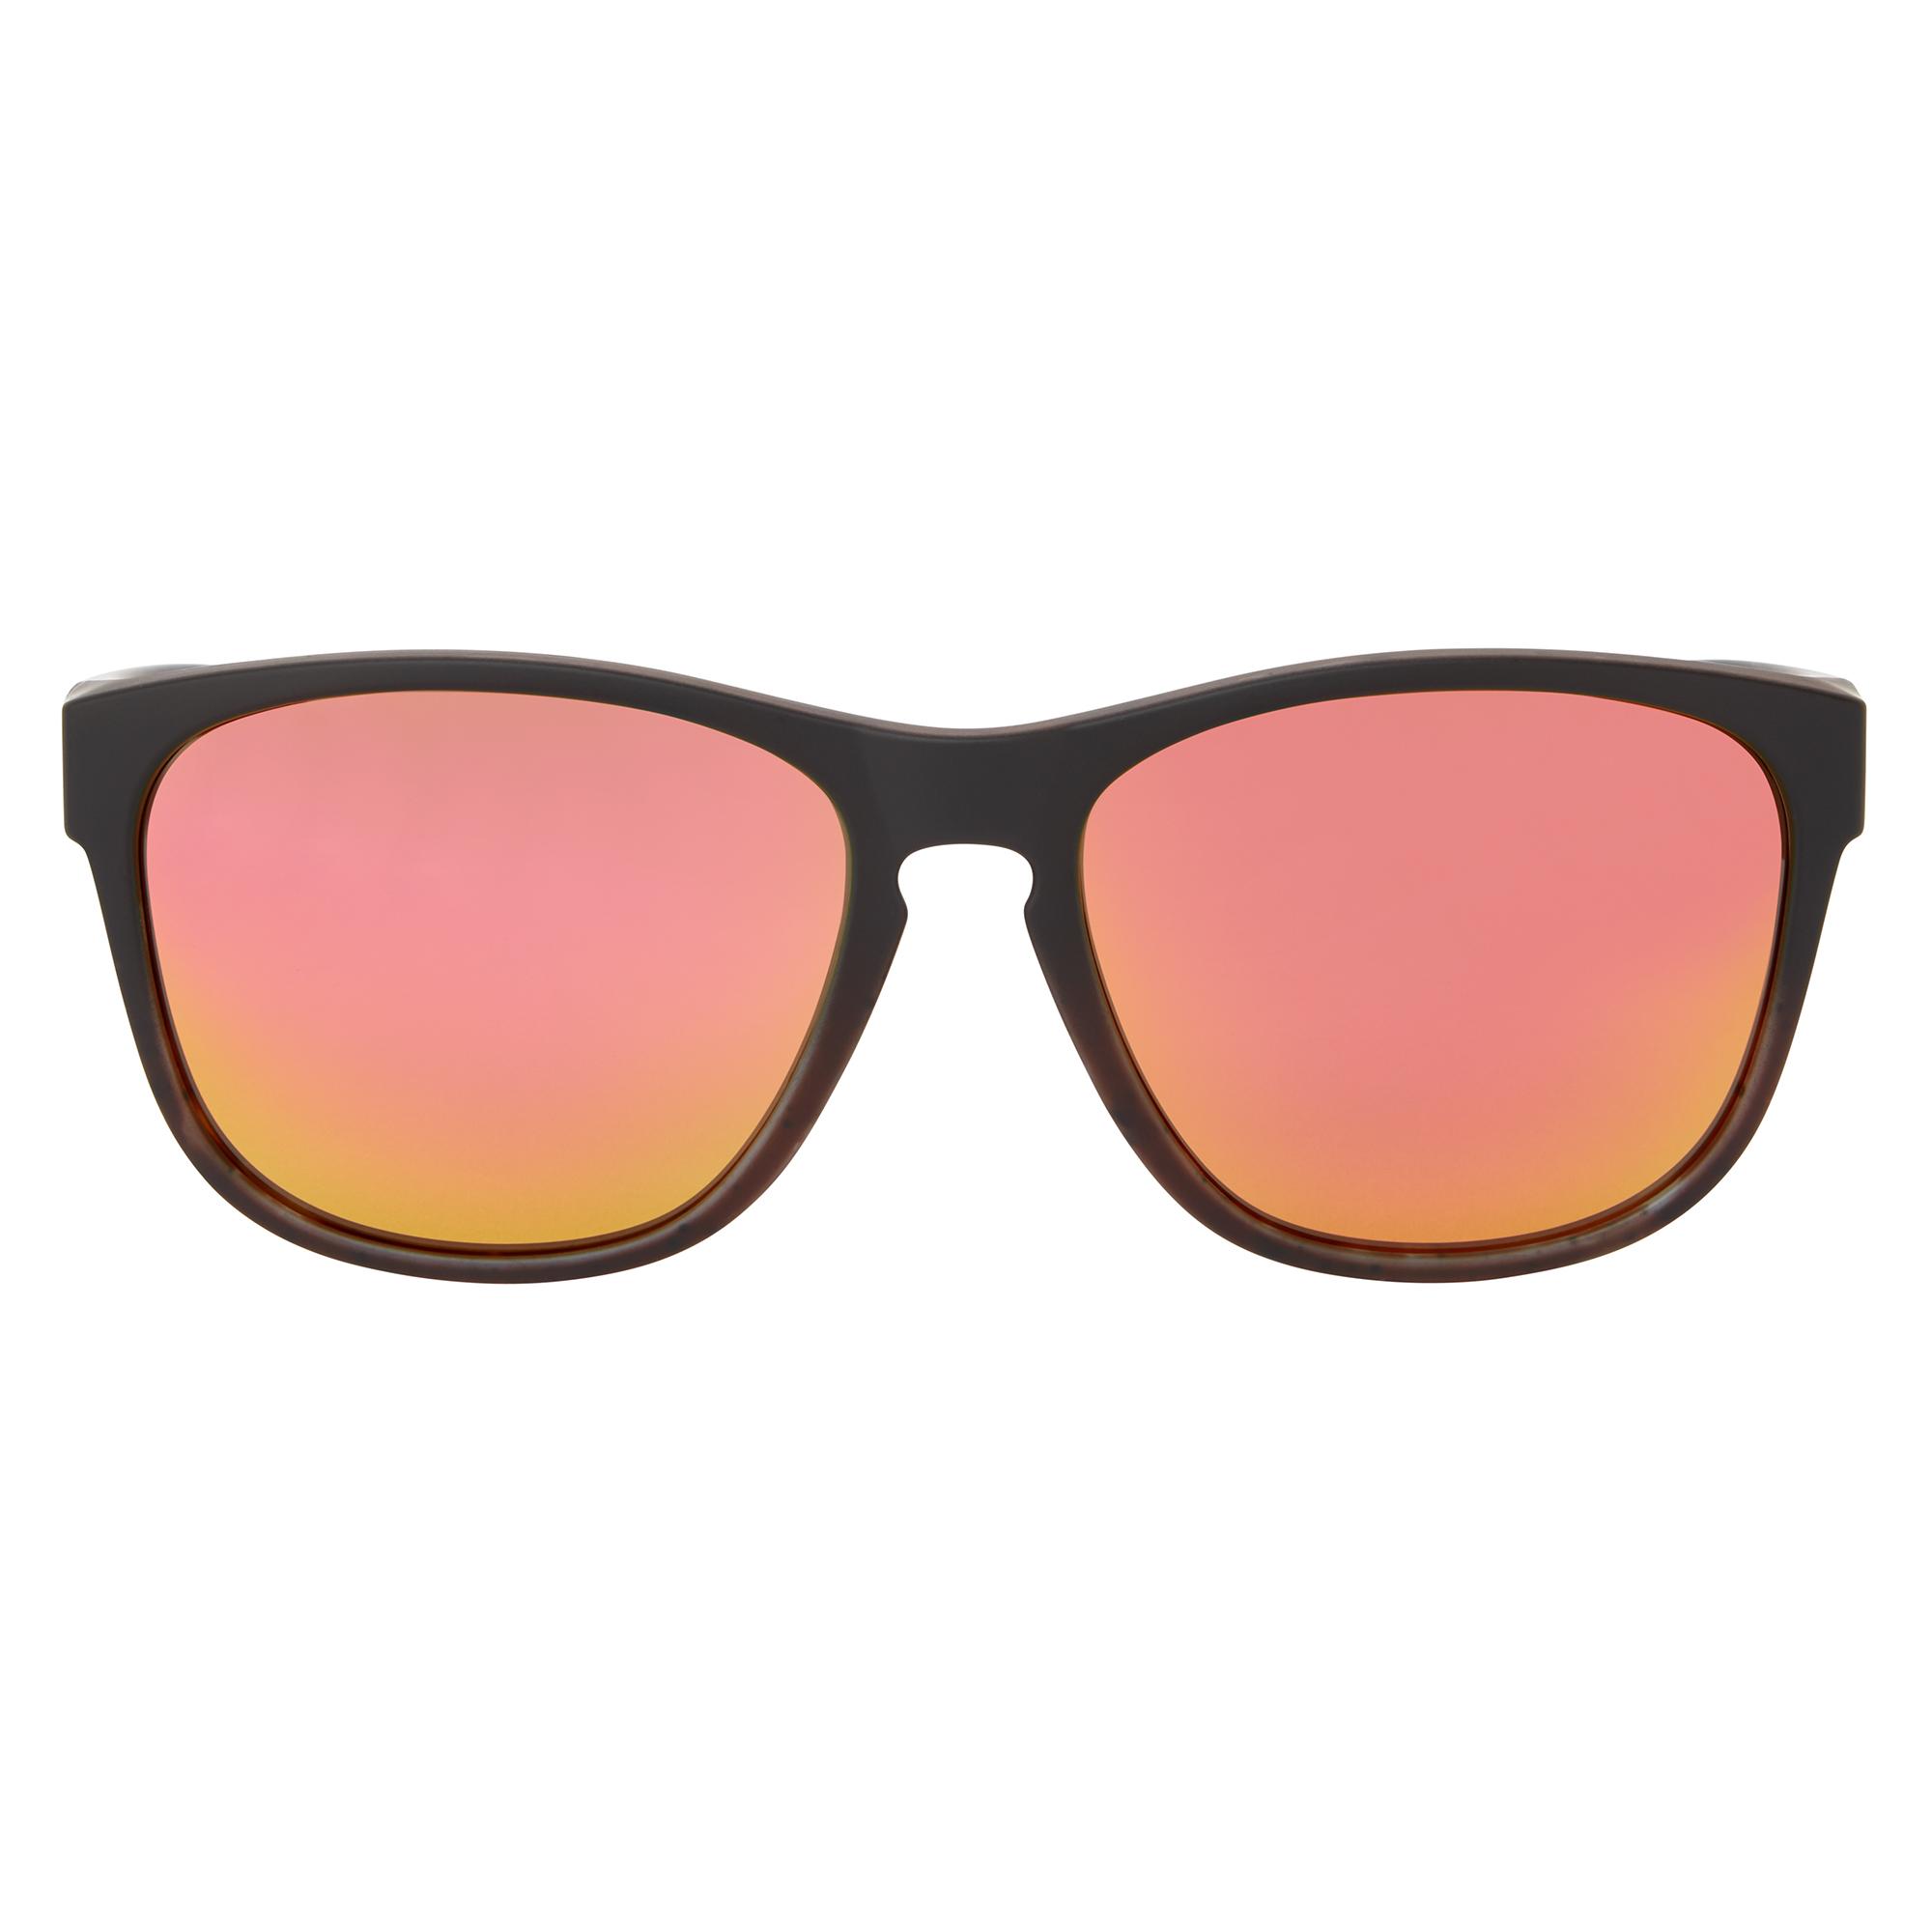 Dhb Umbra Sunglasses - Brown/red